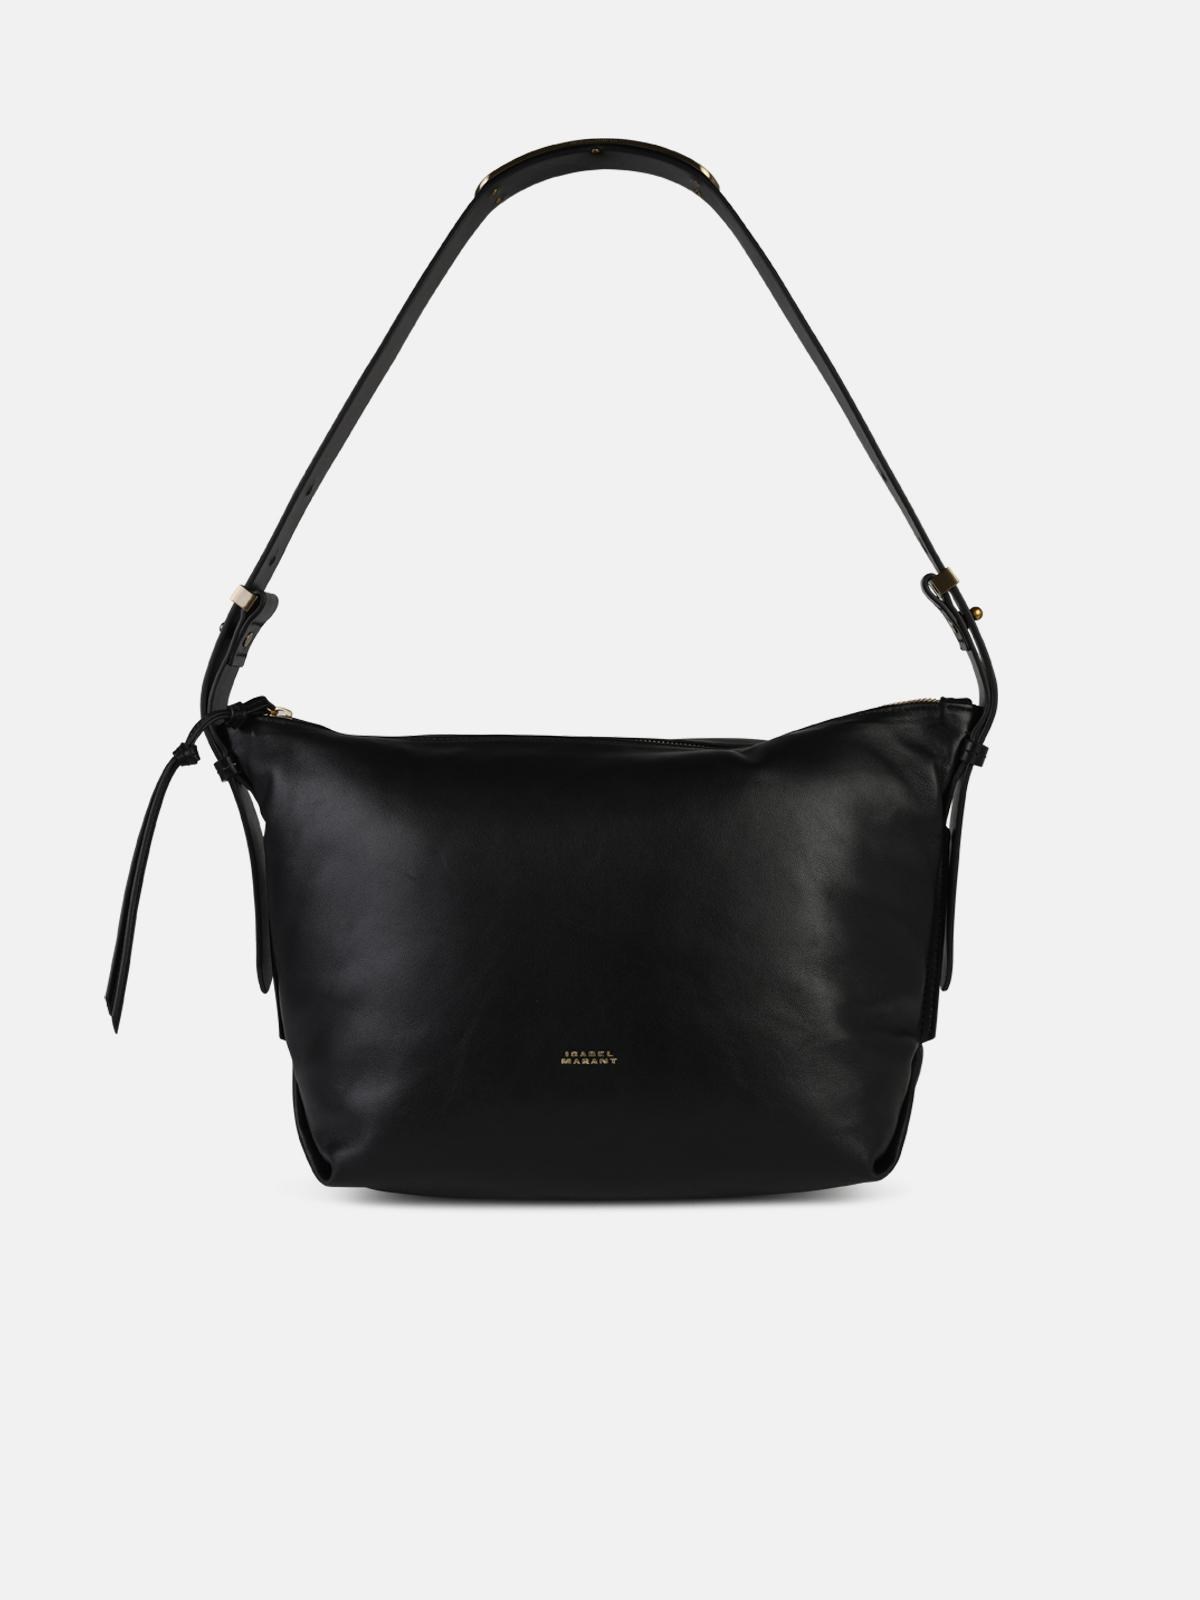 Isabel Marant 'leyden' Black Leather Bag